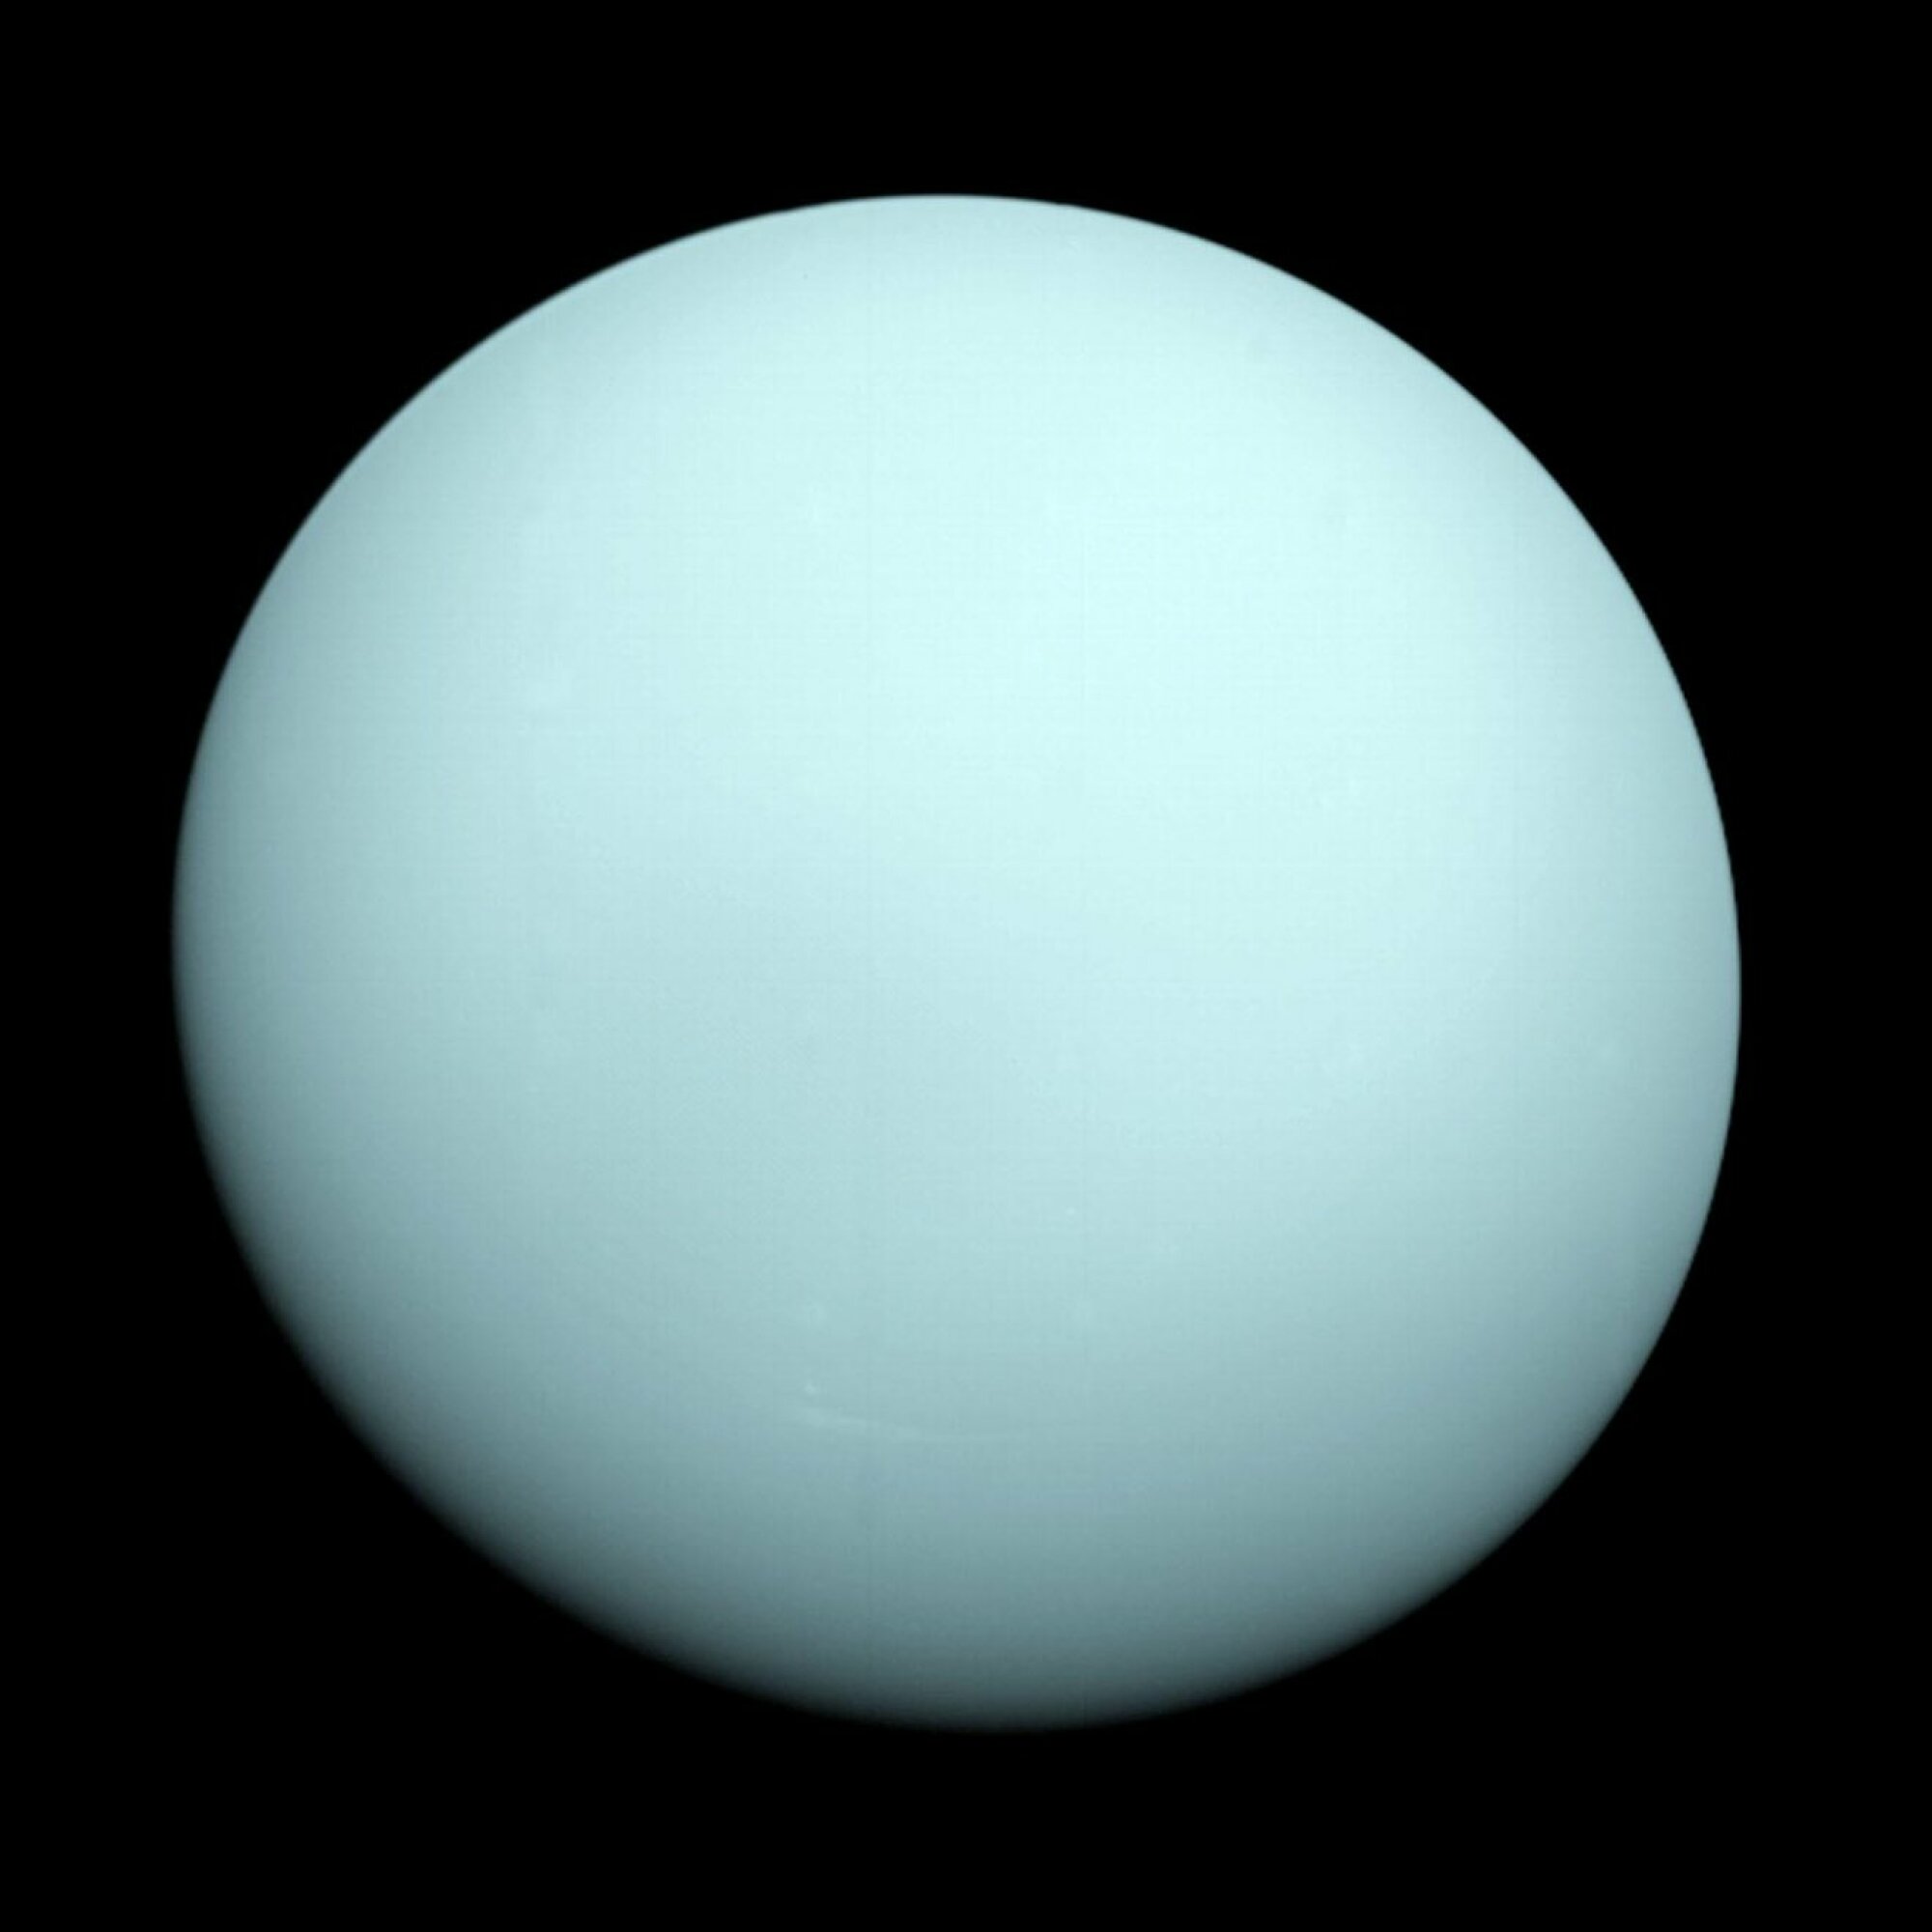 Uranus as viewed by NASA's Voyager 2 spacecraft in 1986.